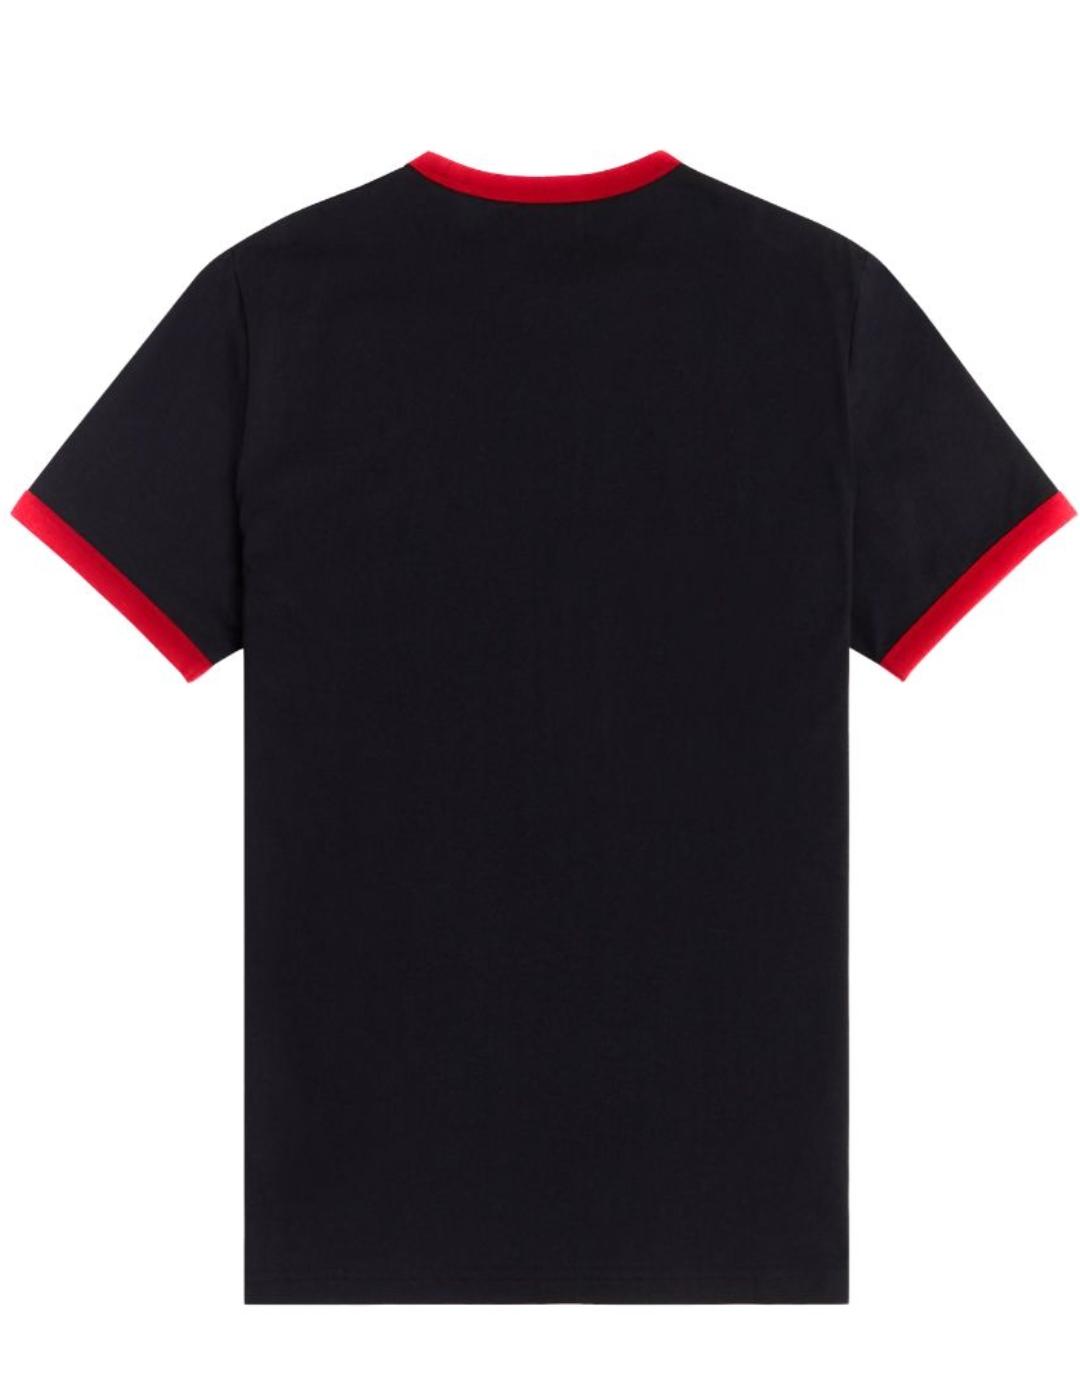 Camiseta Fred Perry marino franja roja hombre-z